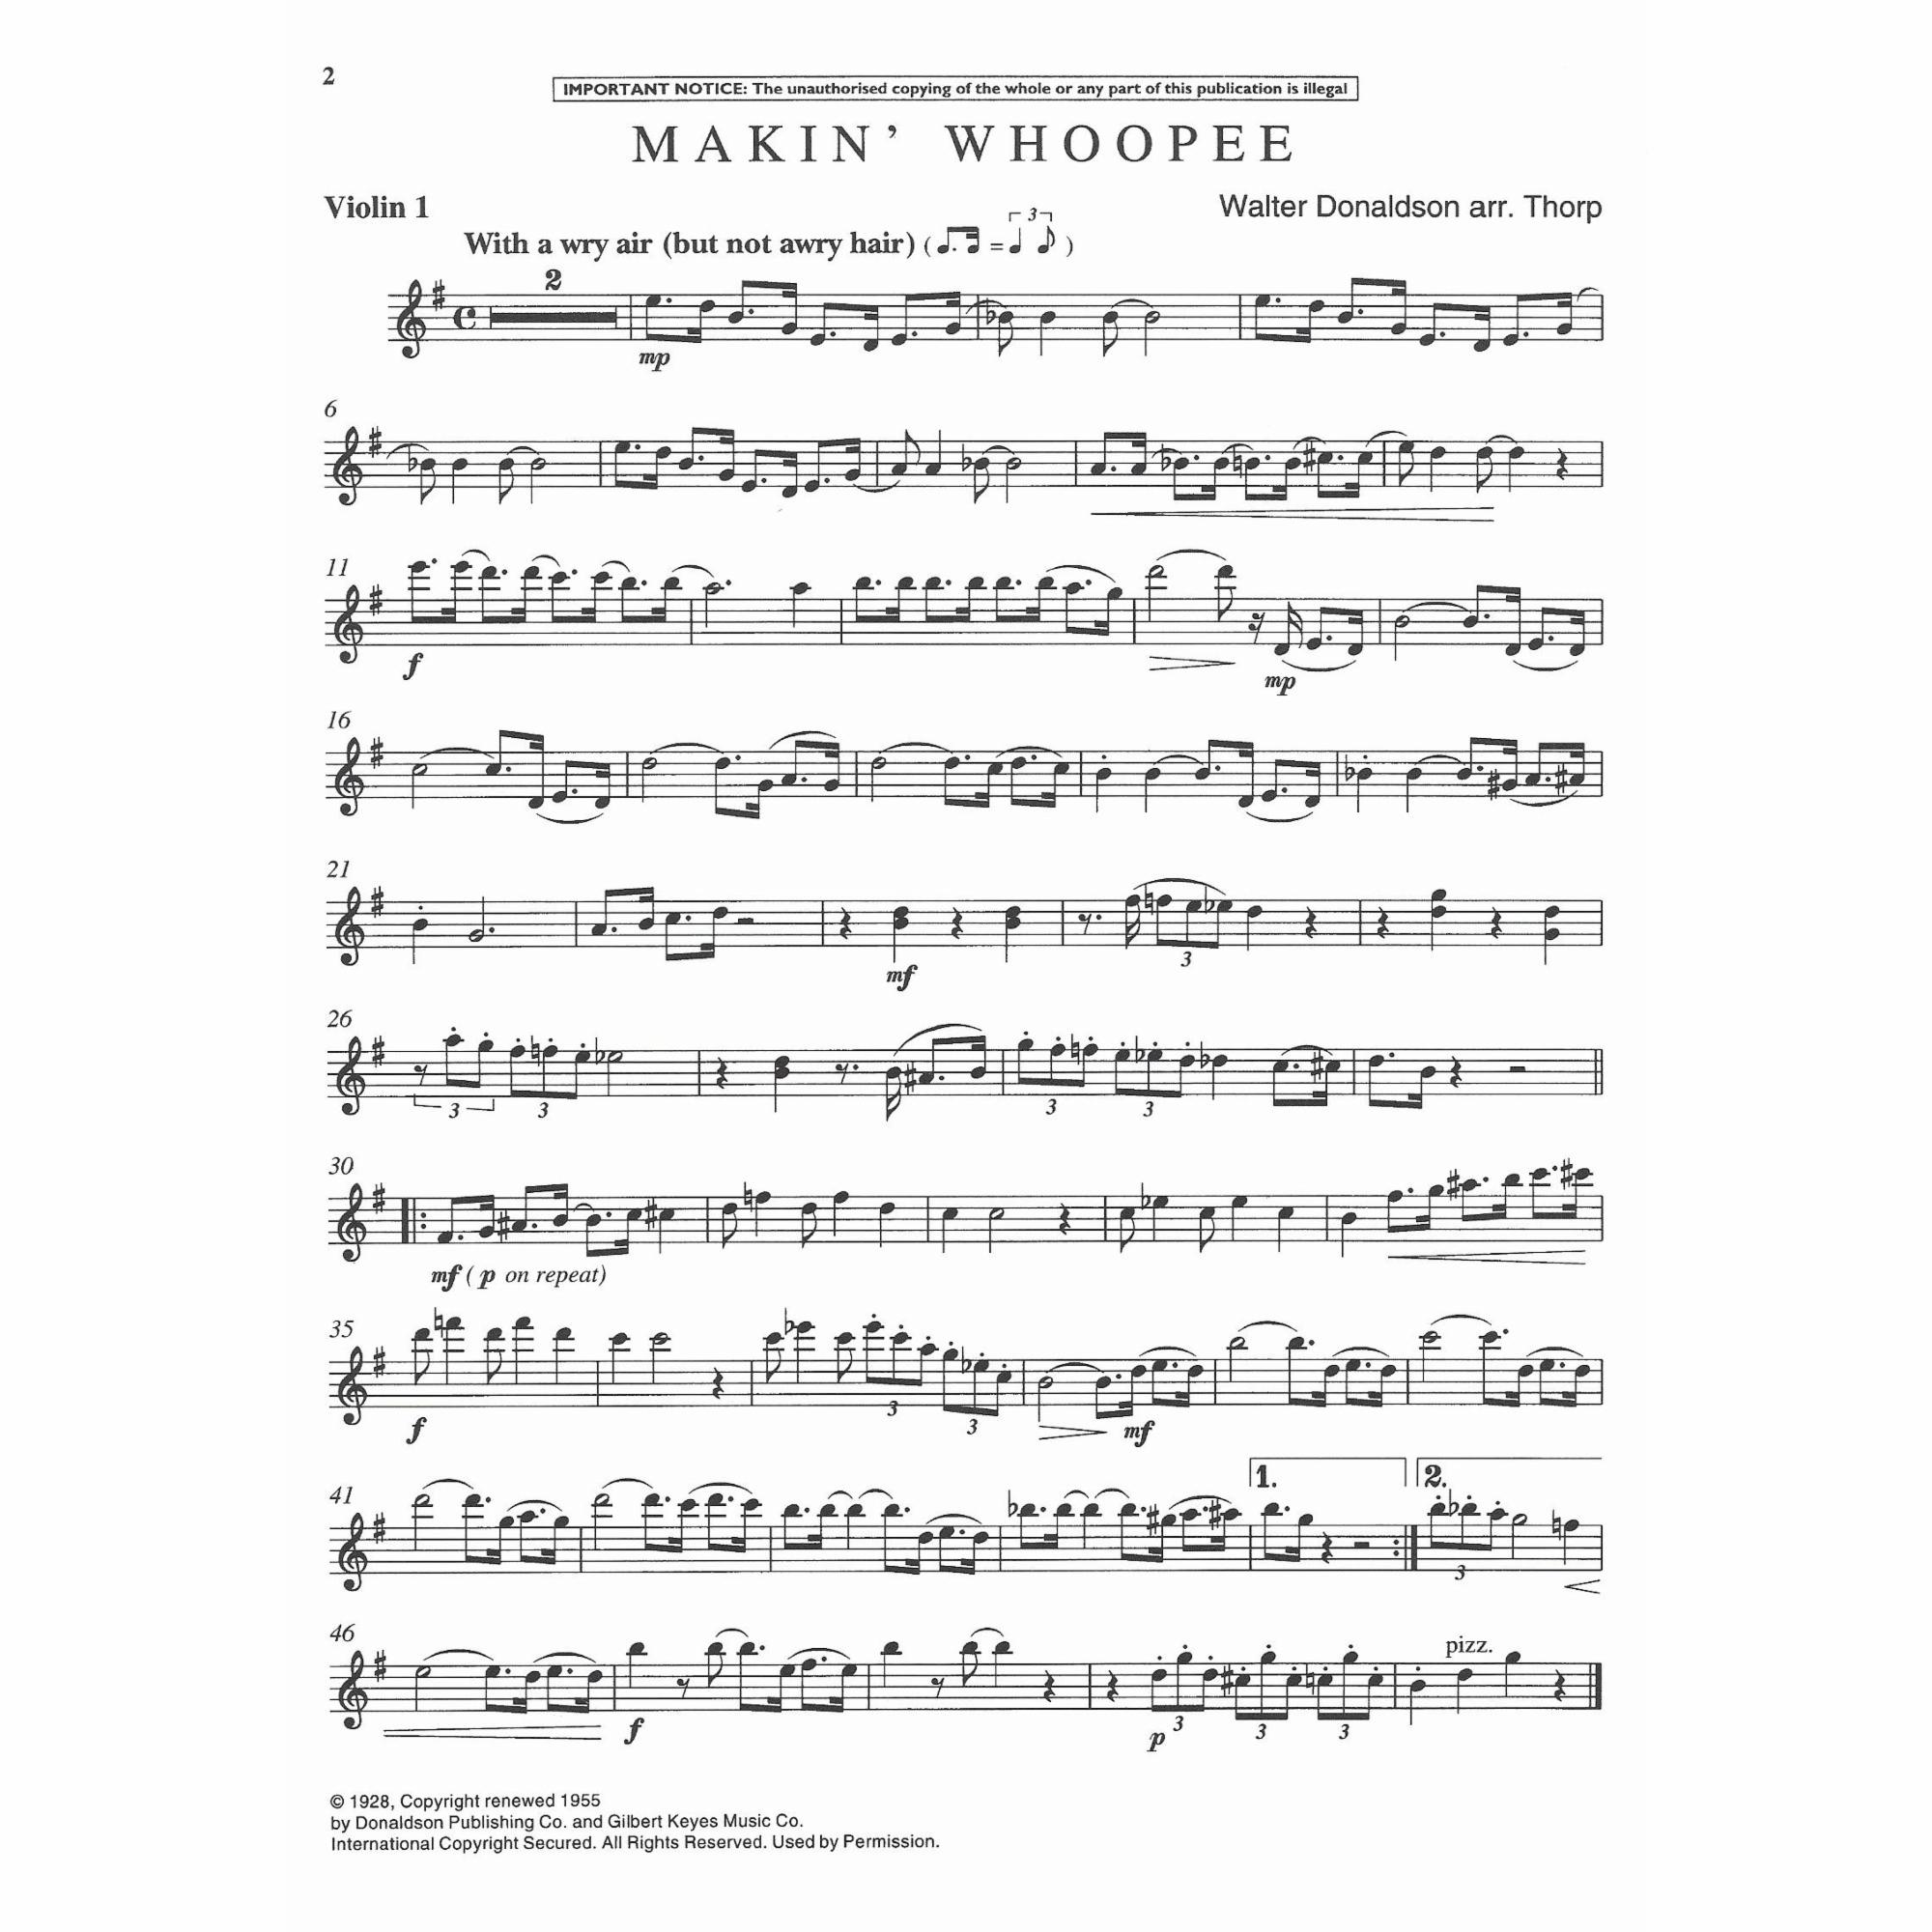 Sample: Vol. 3, Violin I (Pg. 2)